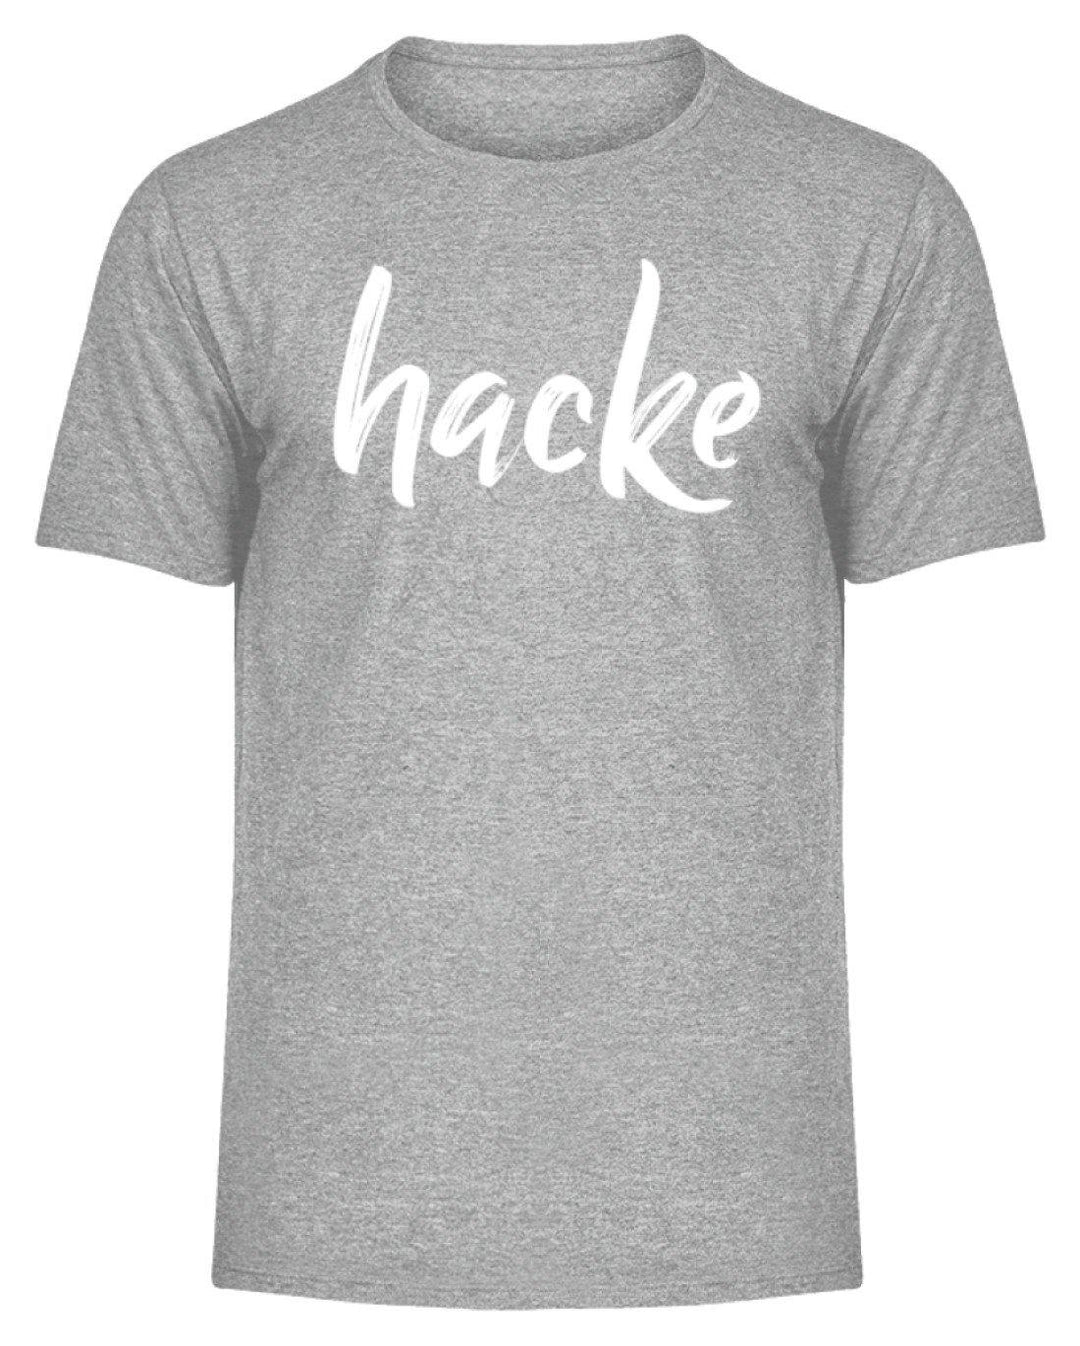 hacke Shirt  - Herren Melange Shirt - Words on Shirts Sag es mit dem Mittelfinger Shirts Hoodies Sweatshirt Taschen Gymsack Spruch Sprüche Statement